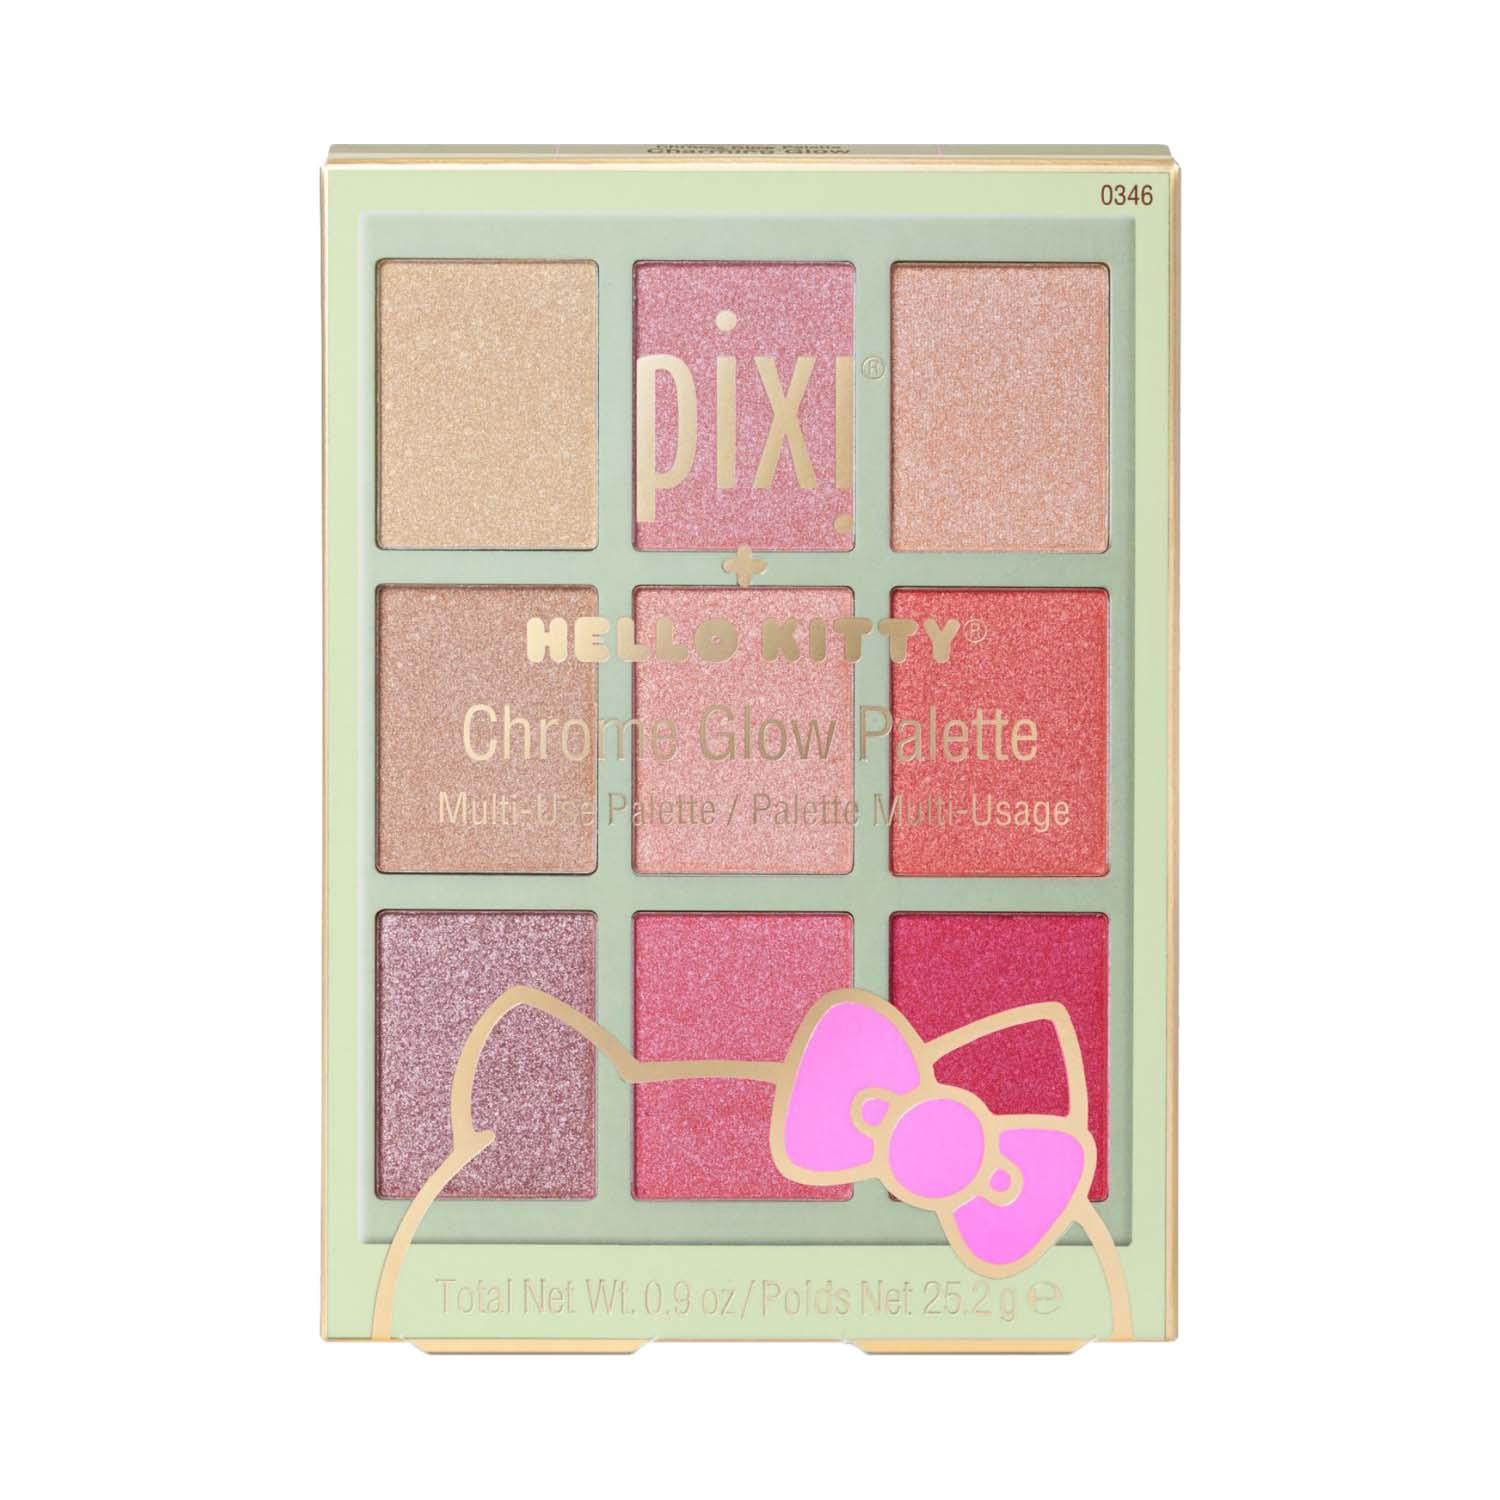  | PIXI Hello Kitty Chrome Glow Palette - Charming Glow (25.2 g)